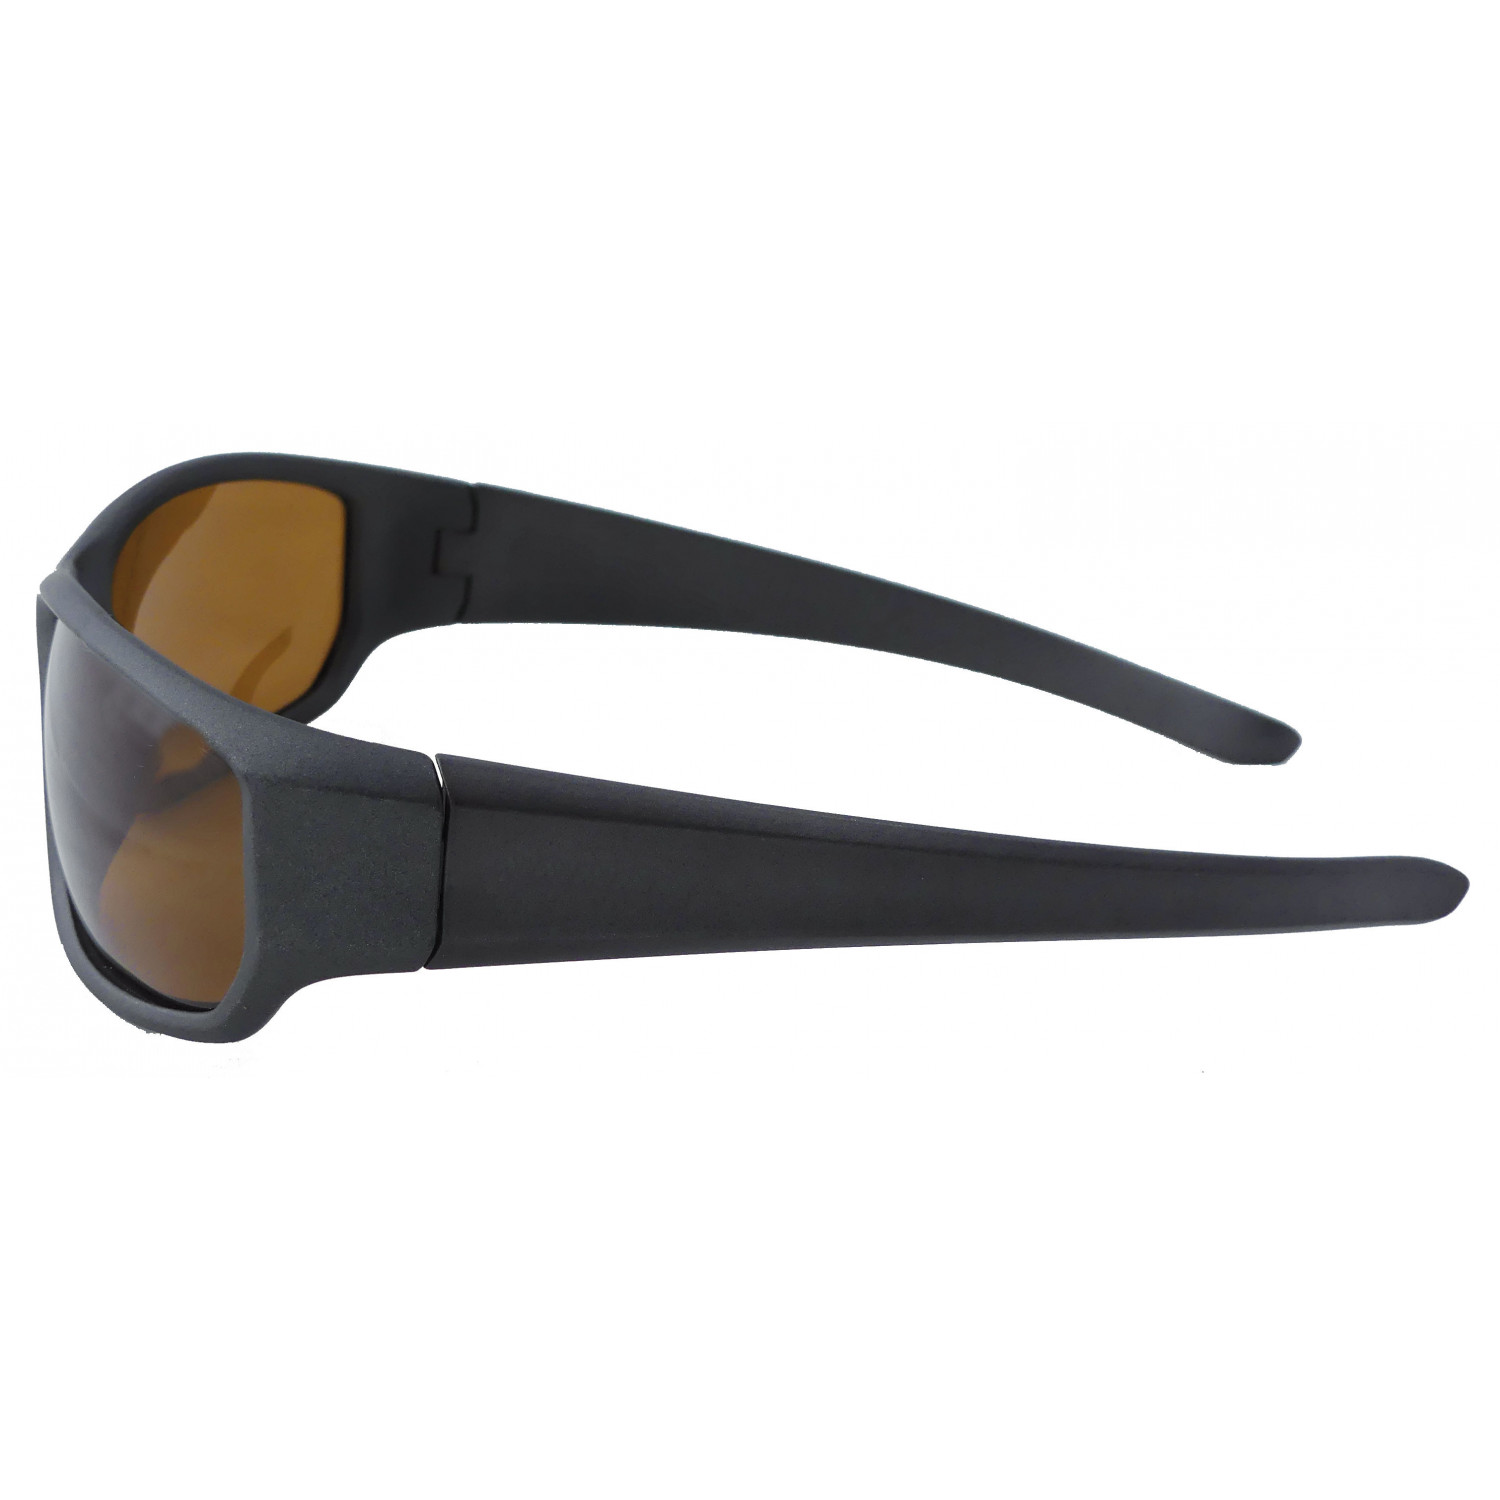 Suxxes Polarisationsbrille braunen Gläsern mit schwarz